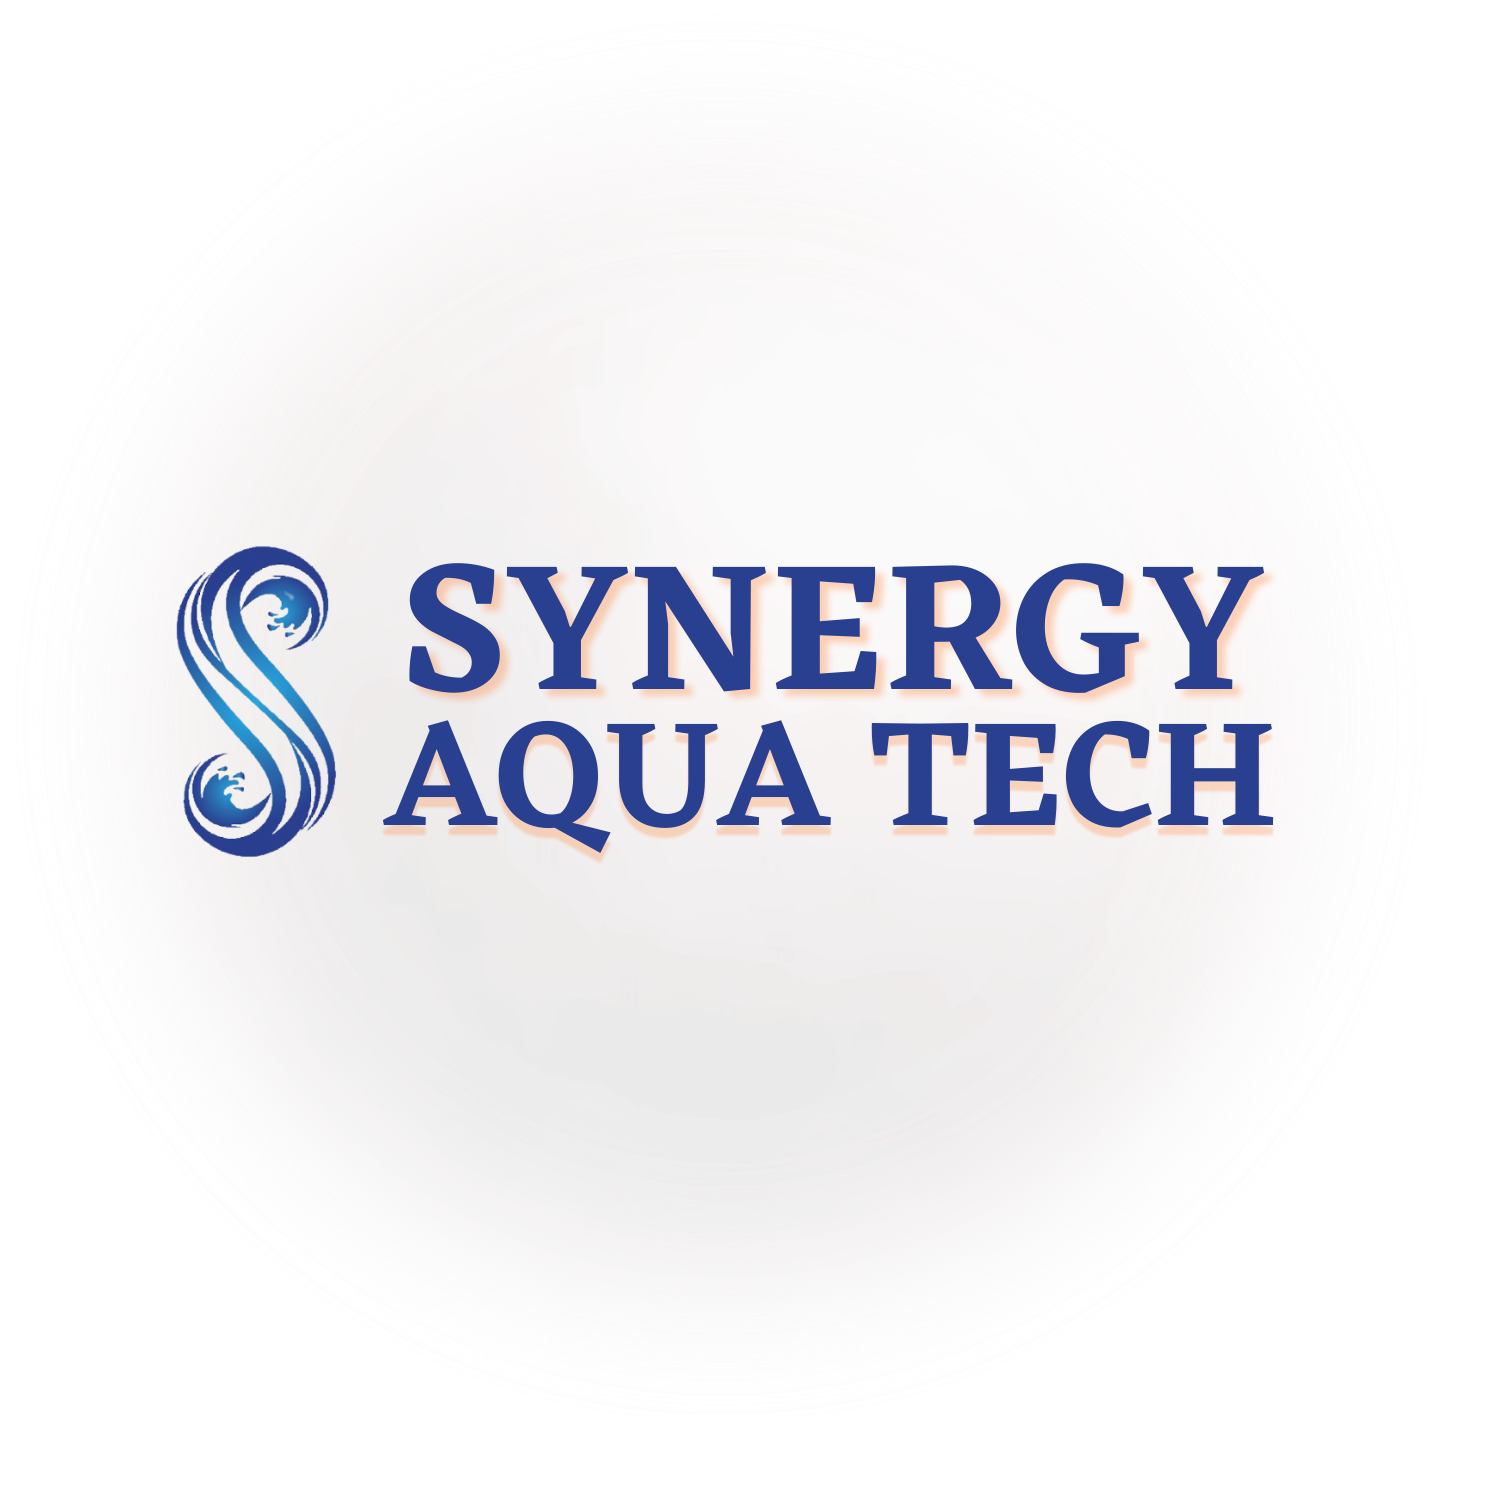 Synergy Aqua Tech